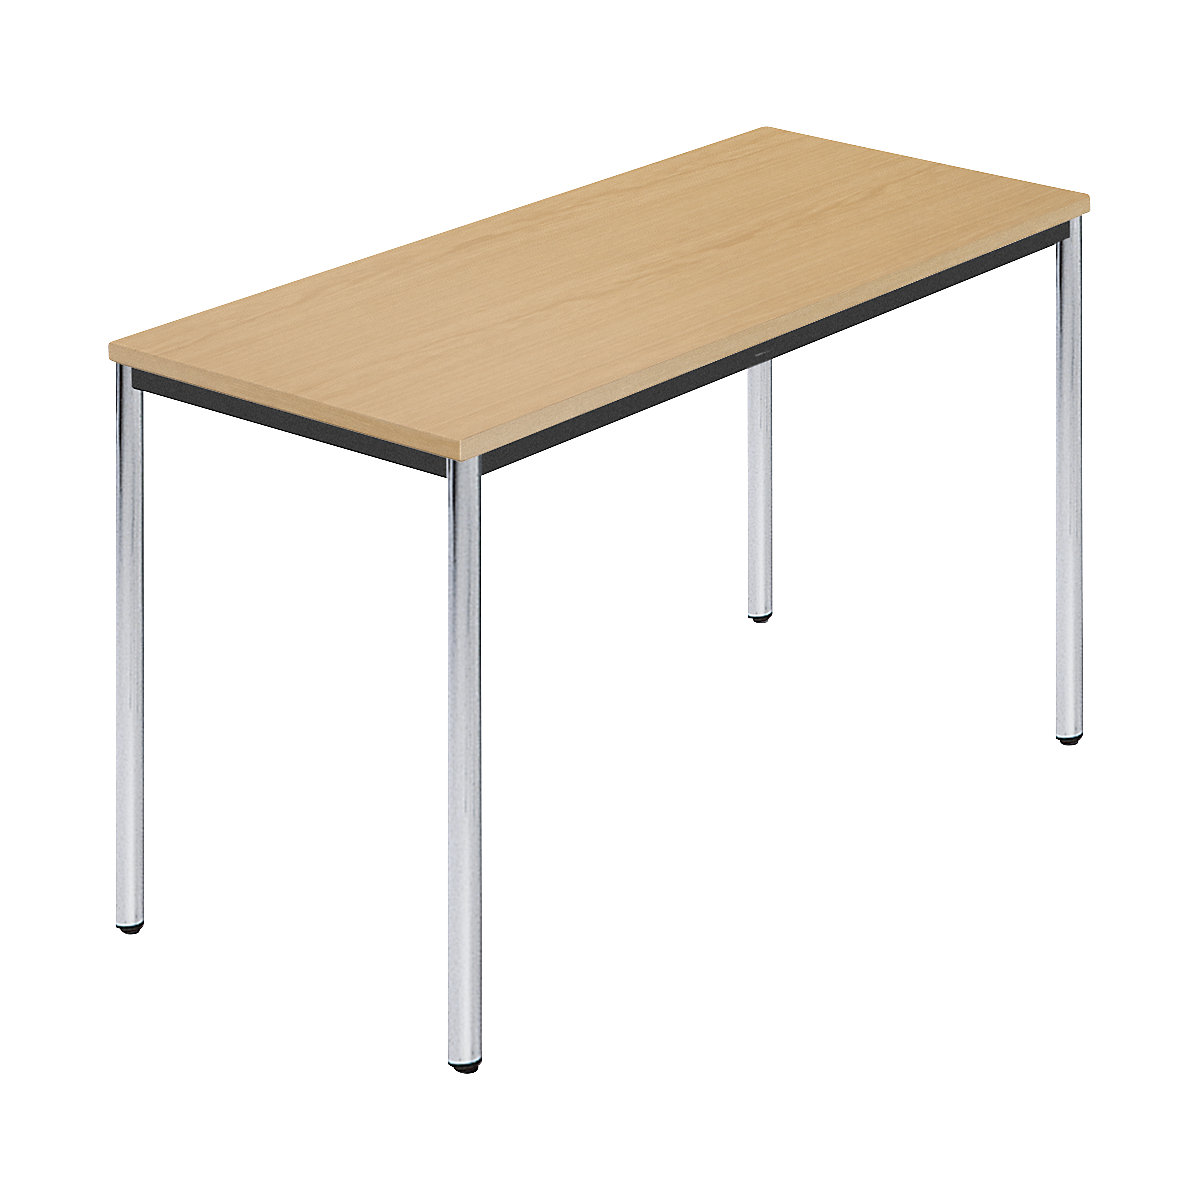 Rechthoekige tafel, met ronde, verchroomde tafelpoten, b x d = 1200 x 600 mm, naturel beukenhout-5